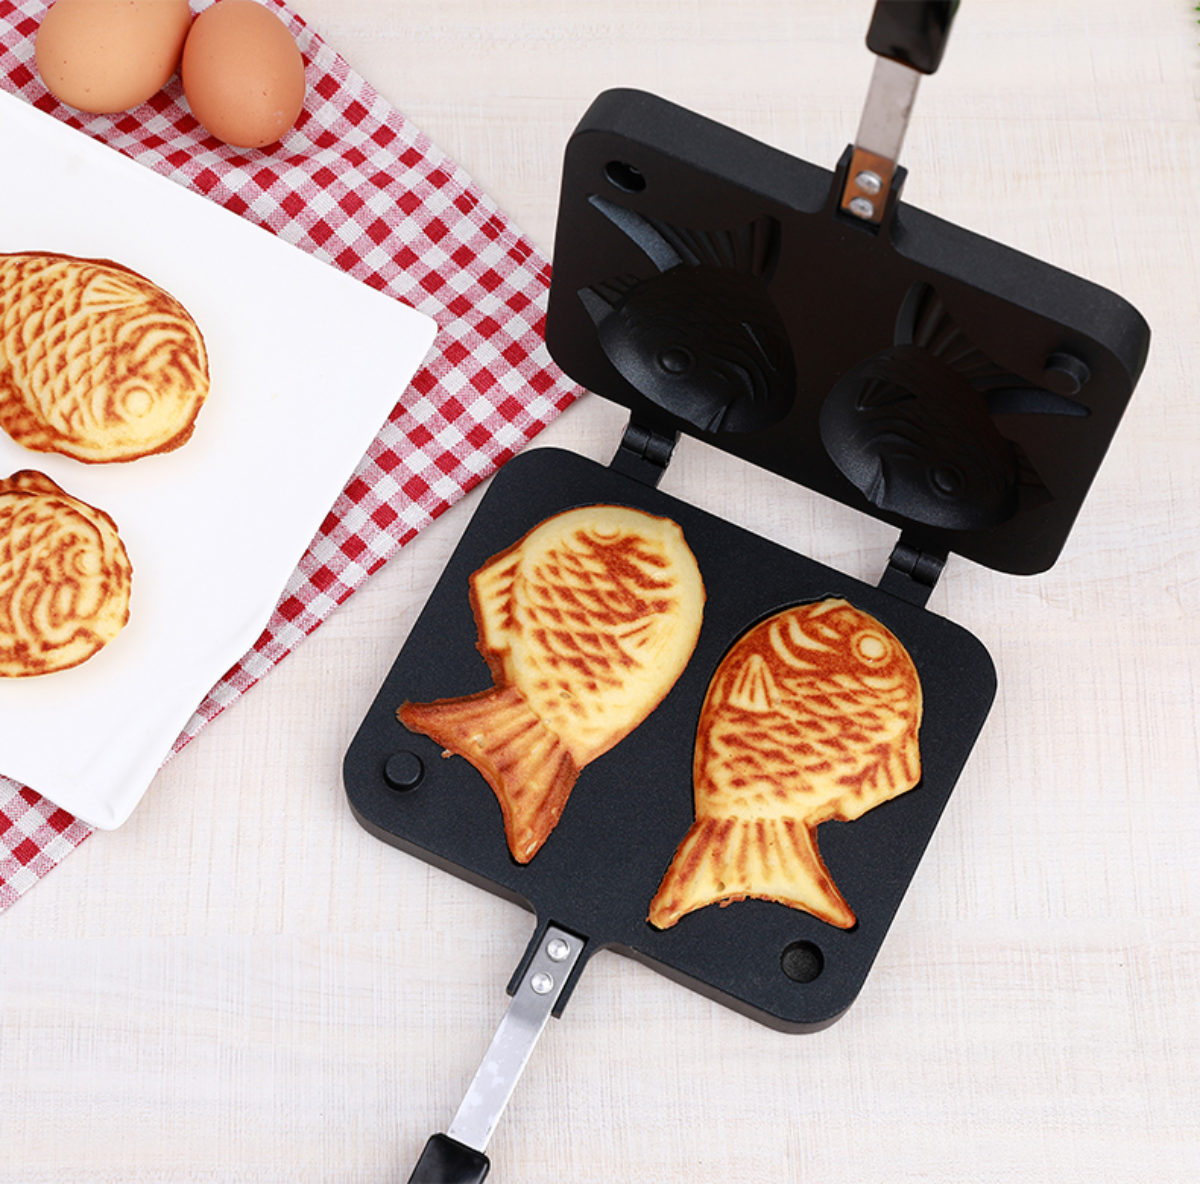 Made in Korea Taiyaki Japanese Fish-shaped Pancake Double Pan CookKing 